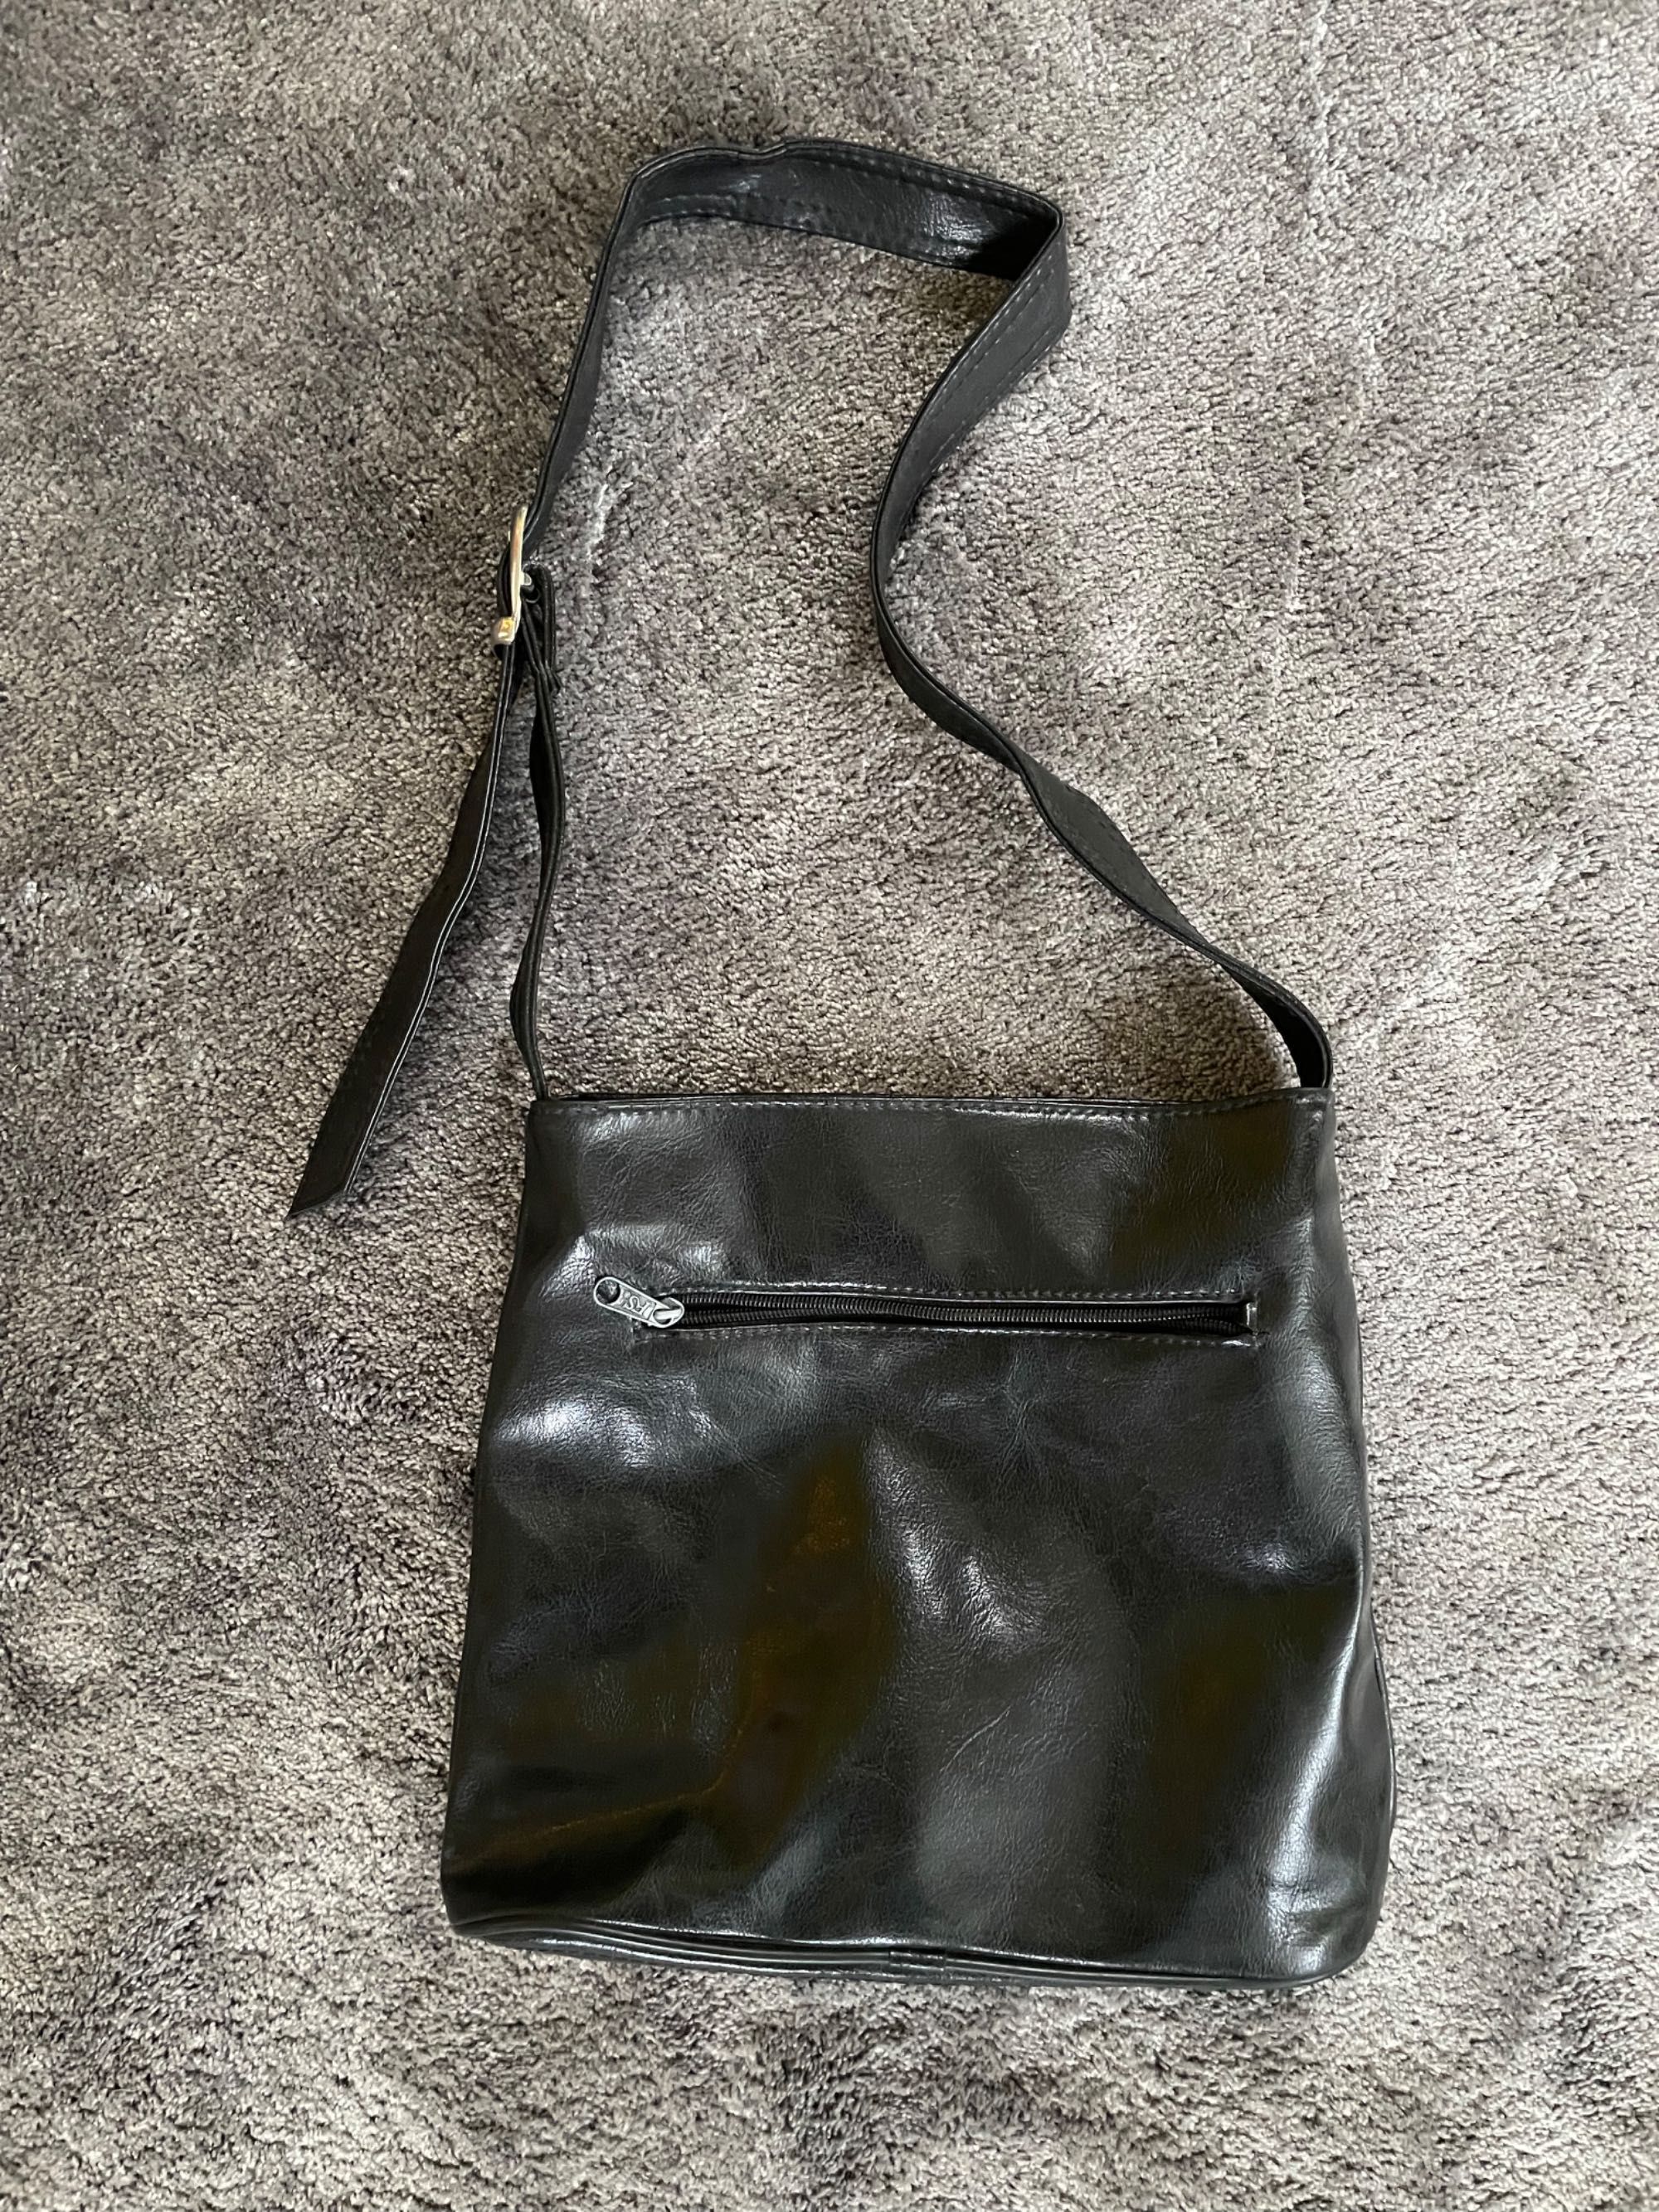 torba torebka saszetka blyszczaca czarna na ramie stylowa